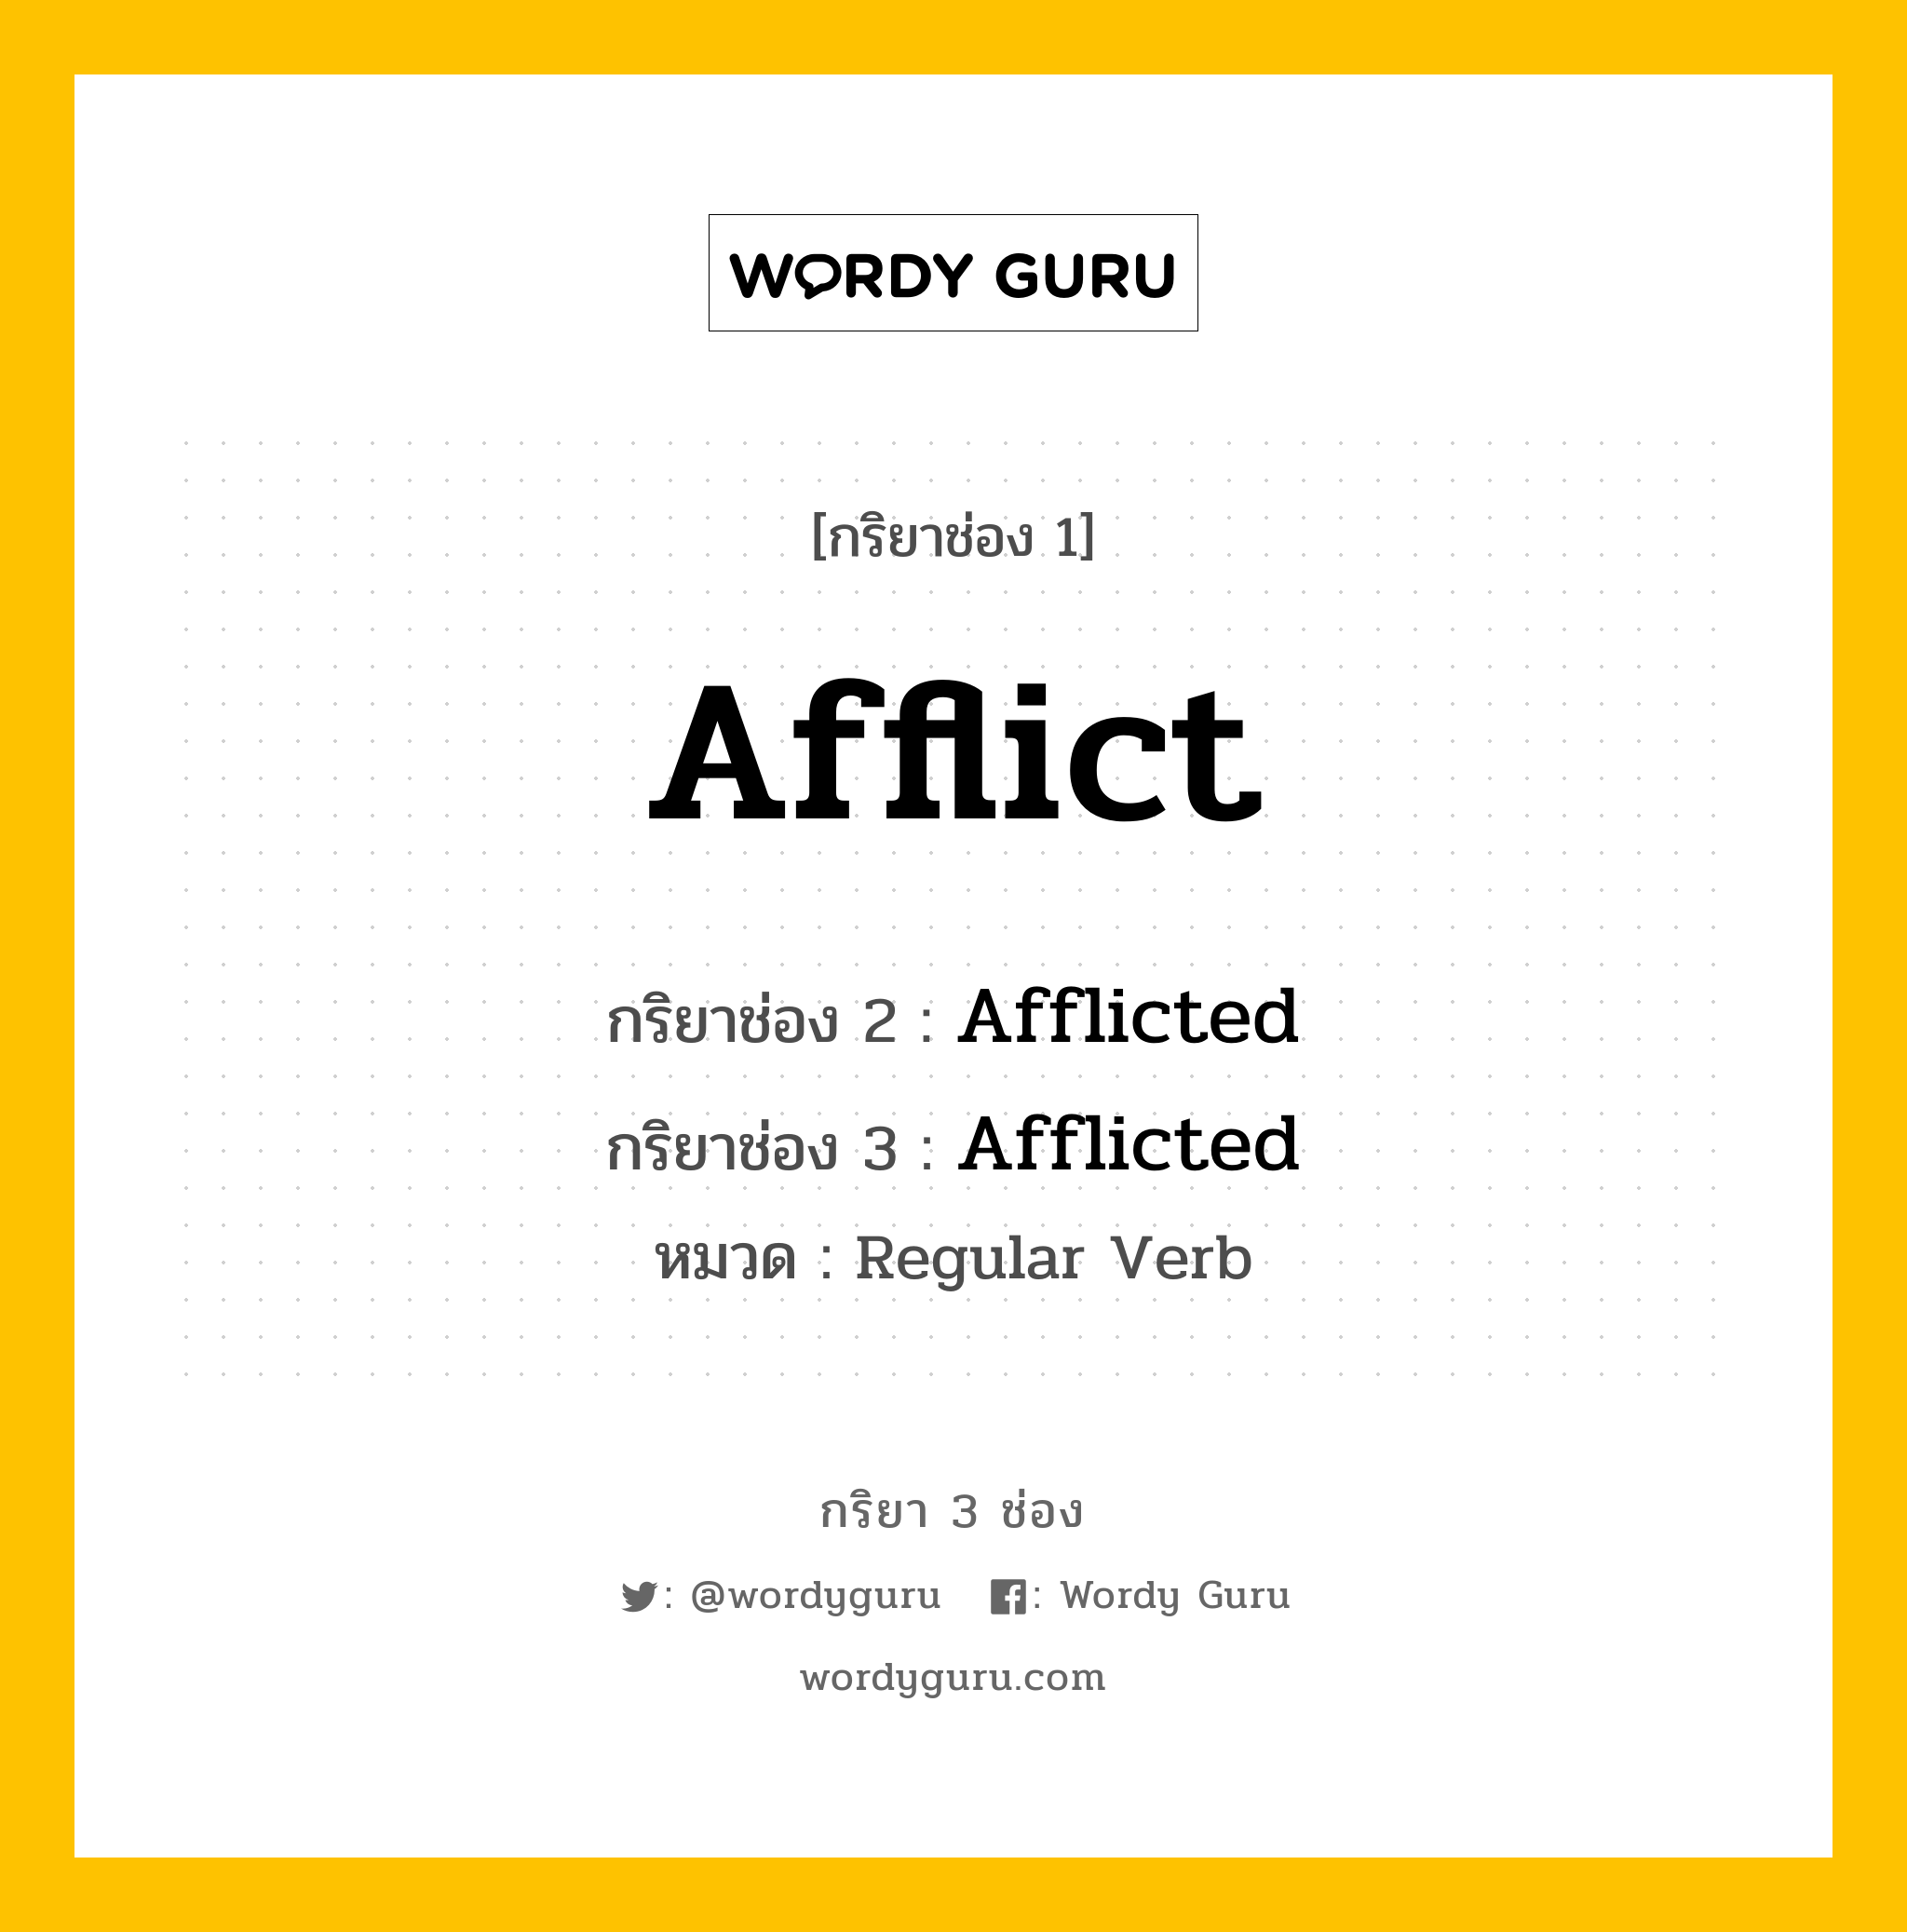 Afflict มีกริยา 3 ช่องอะไรบ้าง? คำศัพท์ในกลุ่มประเภท Regular Verb, กริยาช่อง 1 Afflict กริยาช่อง 2 Afflicted กริยาช่อง 3 Afflicted หมวด Regular Verb หมวด Regular Verb